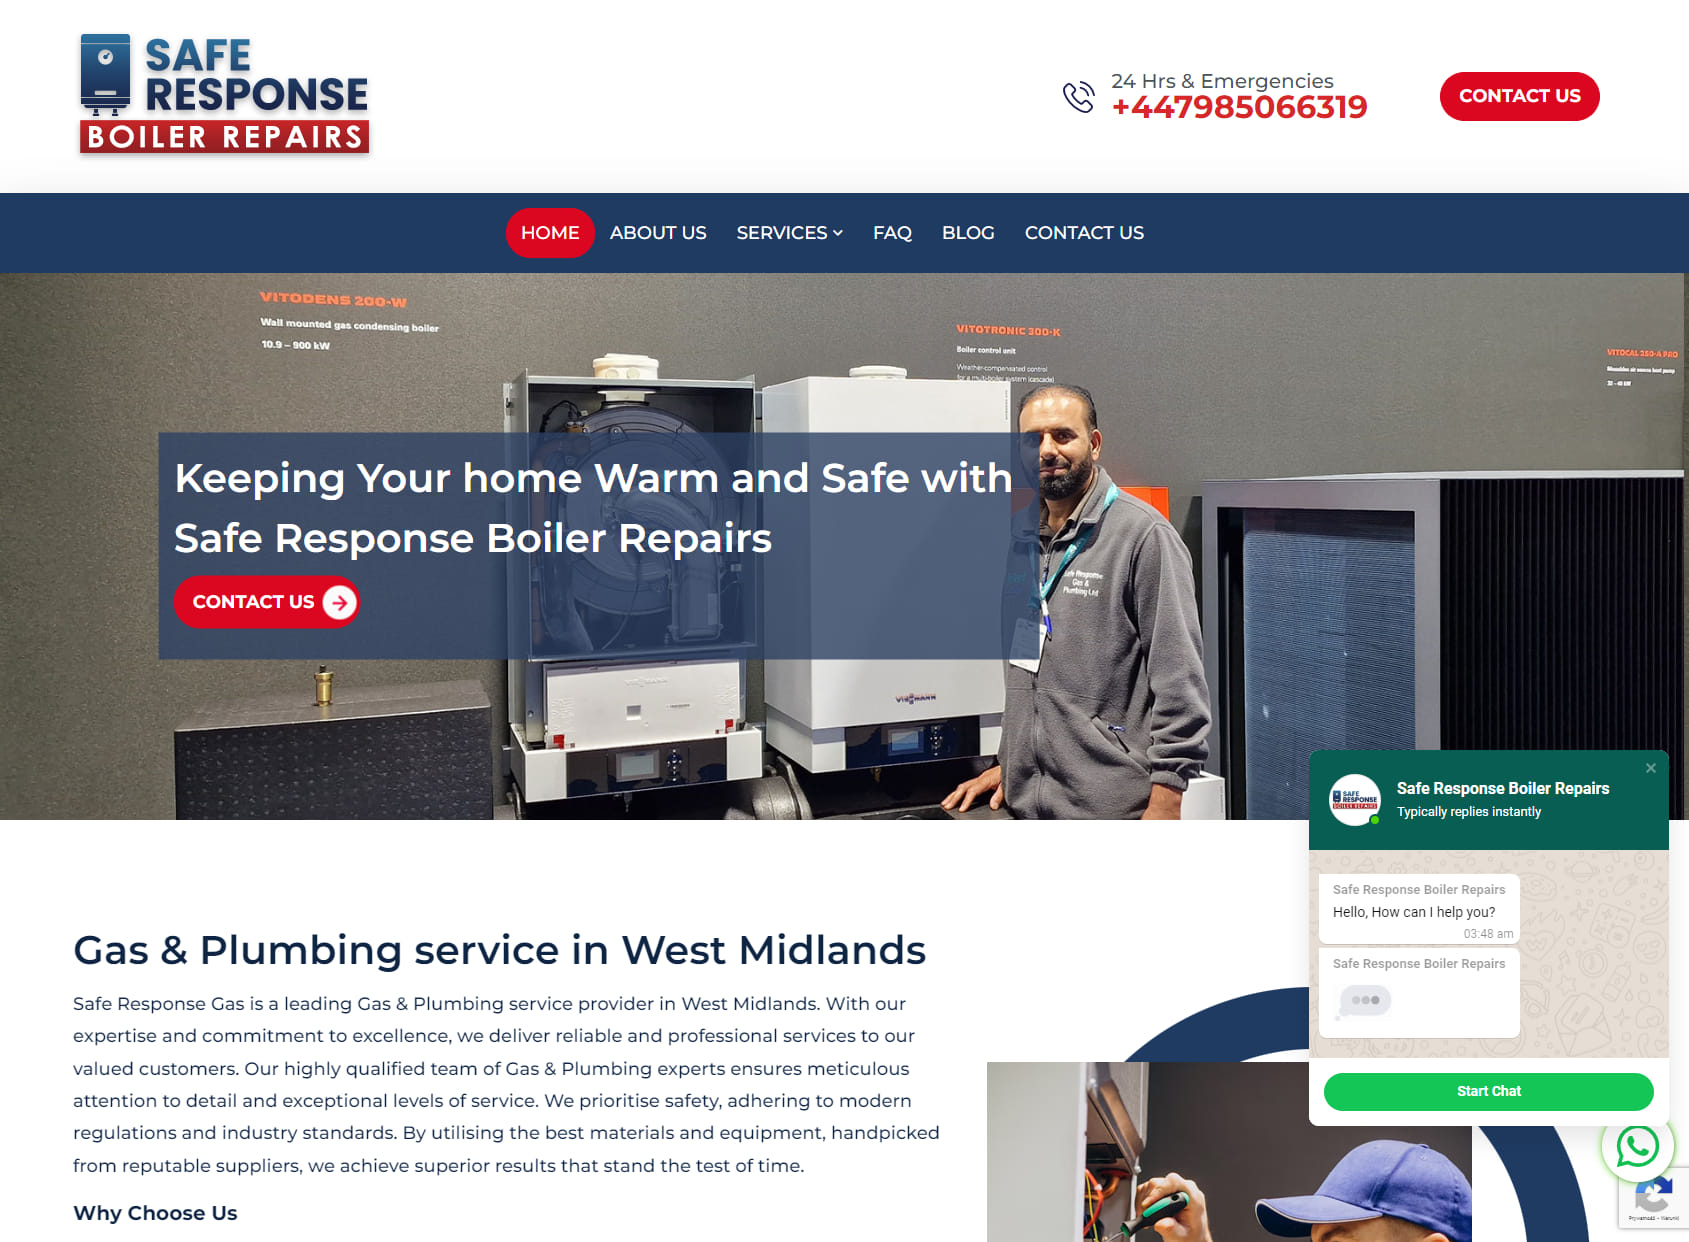 Safe Response Gas & Plumbing Ltd